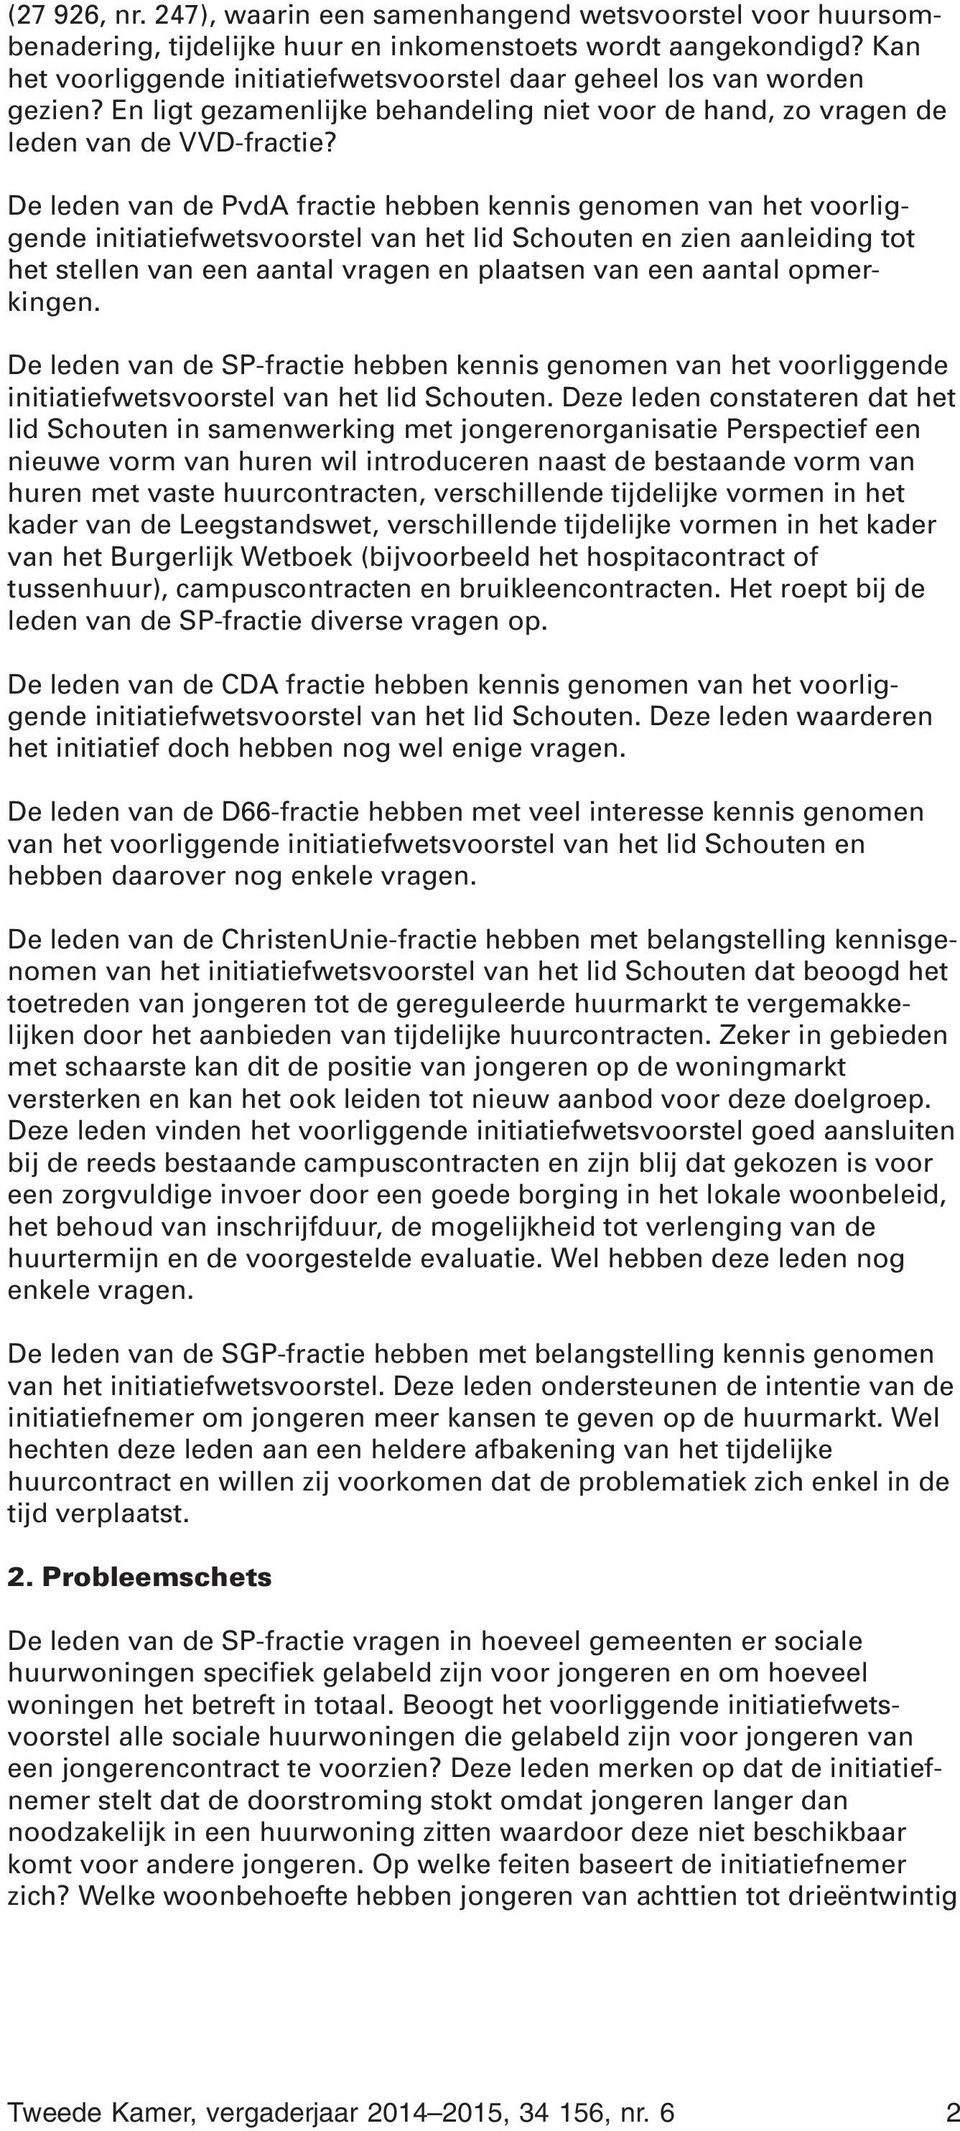 De leden van de PvdA fractie hebben kennis genomen van het voorliggende initiatiefwetsvoorstel van het lid Schouten en zien aanleiding tot het stellen van een aantal vragen en plaatsen van een aantal